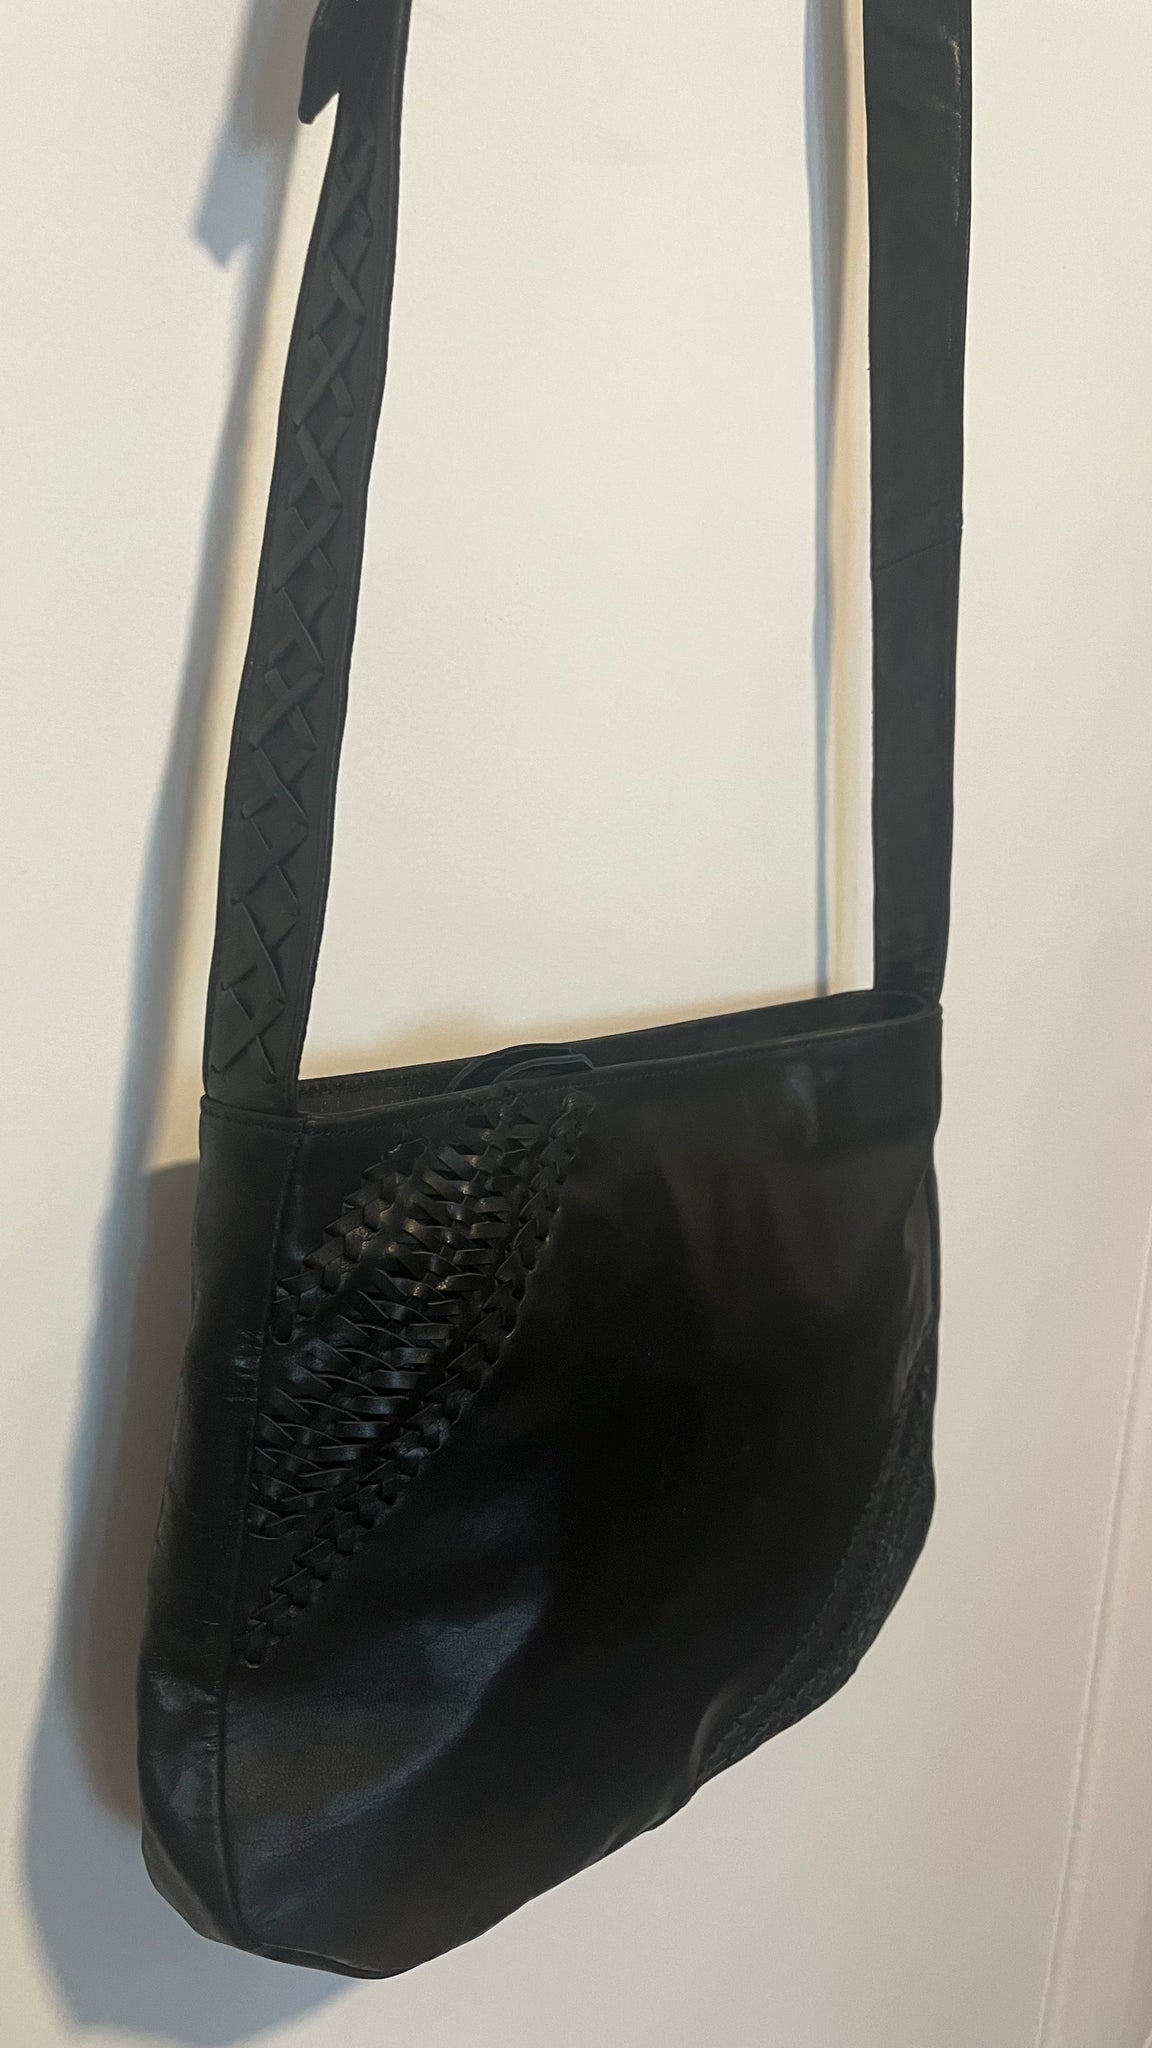 Tasha Leather Bag - Black